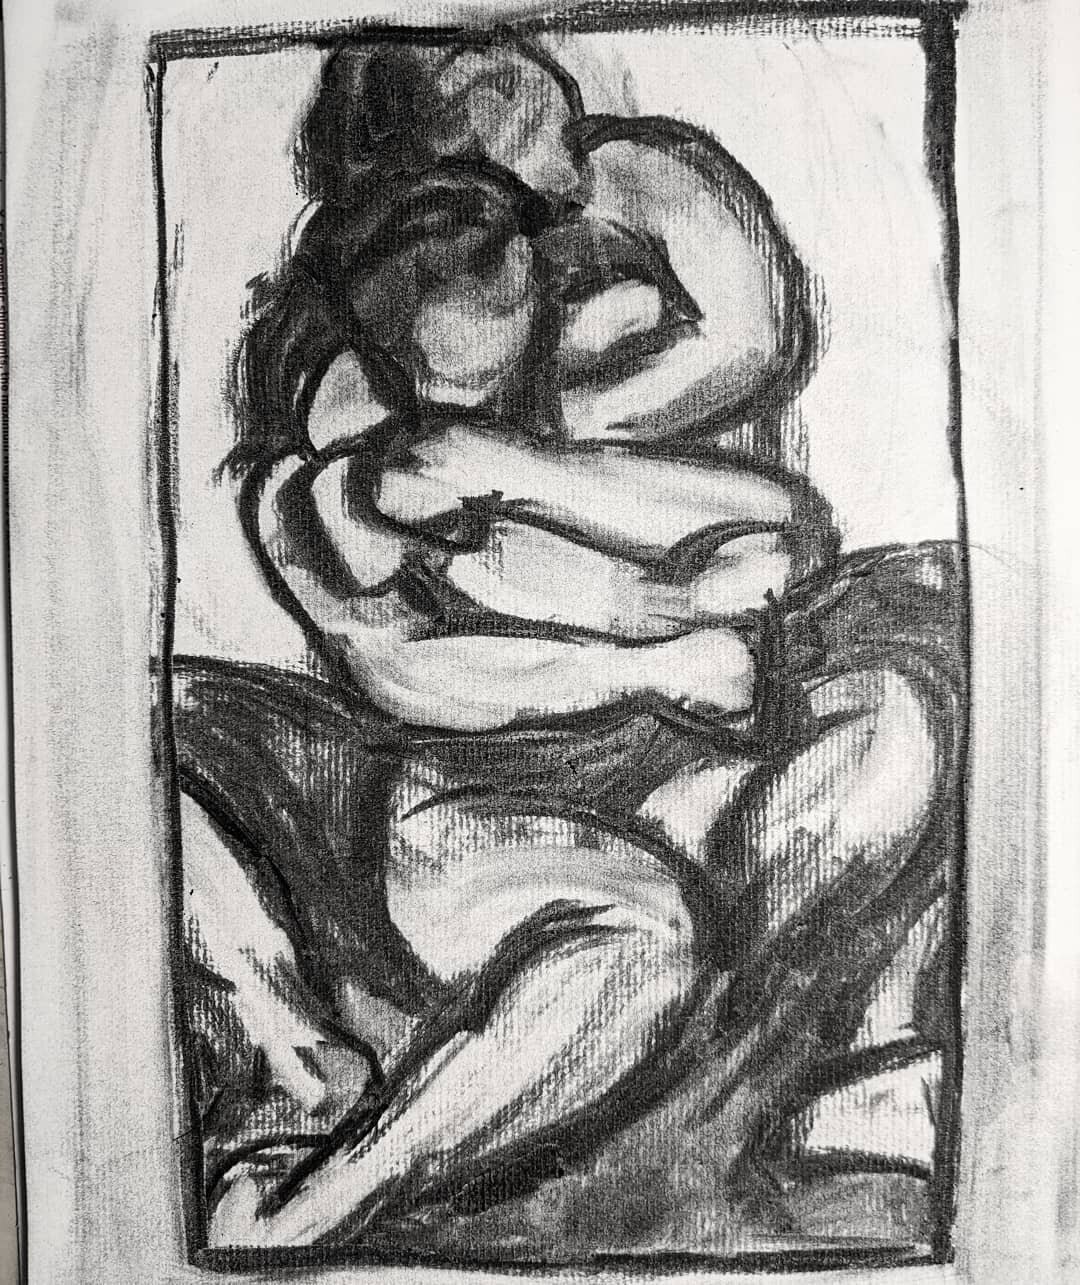 figure drawing
.
.
.
#figuresketch #figuredrawing #figuresketching #figuredrawings #charcoaldrawing #charcoalart #charcoalpaper #charcoal #lifedrawing #seattleartist #artistsoninstagram #artoftheday #instaart